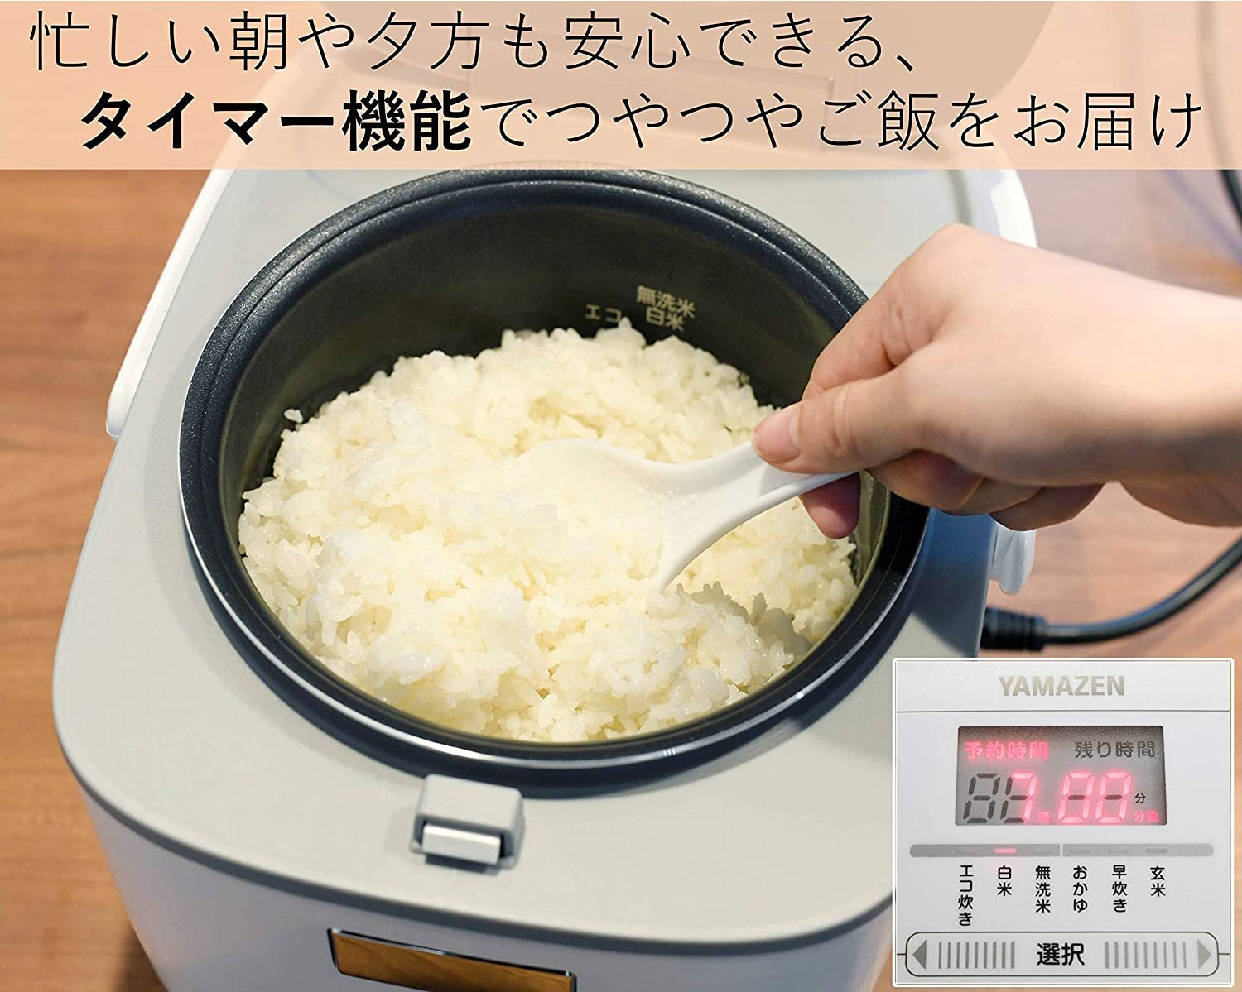 山善(YAMAZEN) マイコン炊飯ジャー YJC-300の商品画像5 